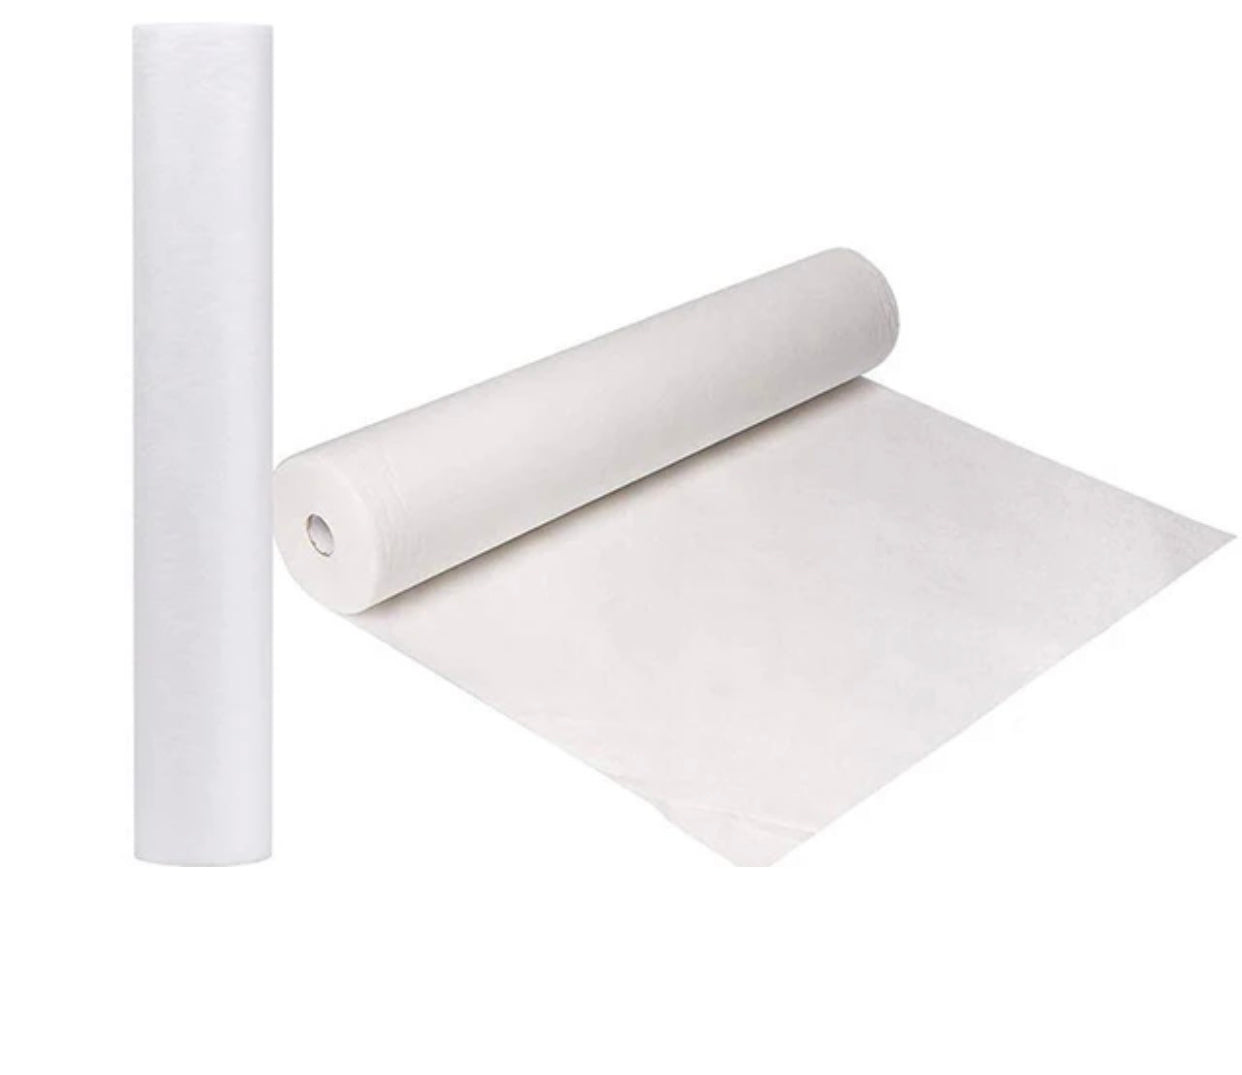 Wax Paper Roll